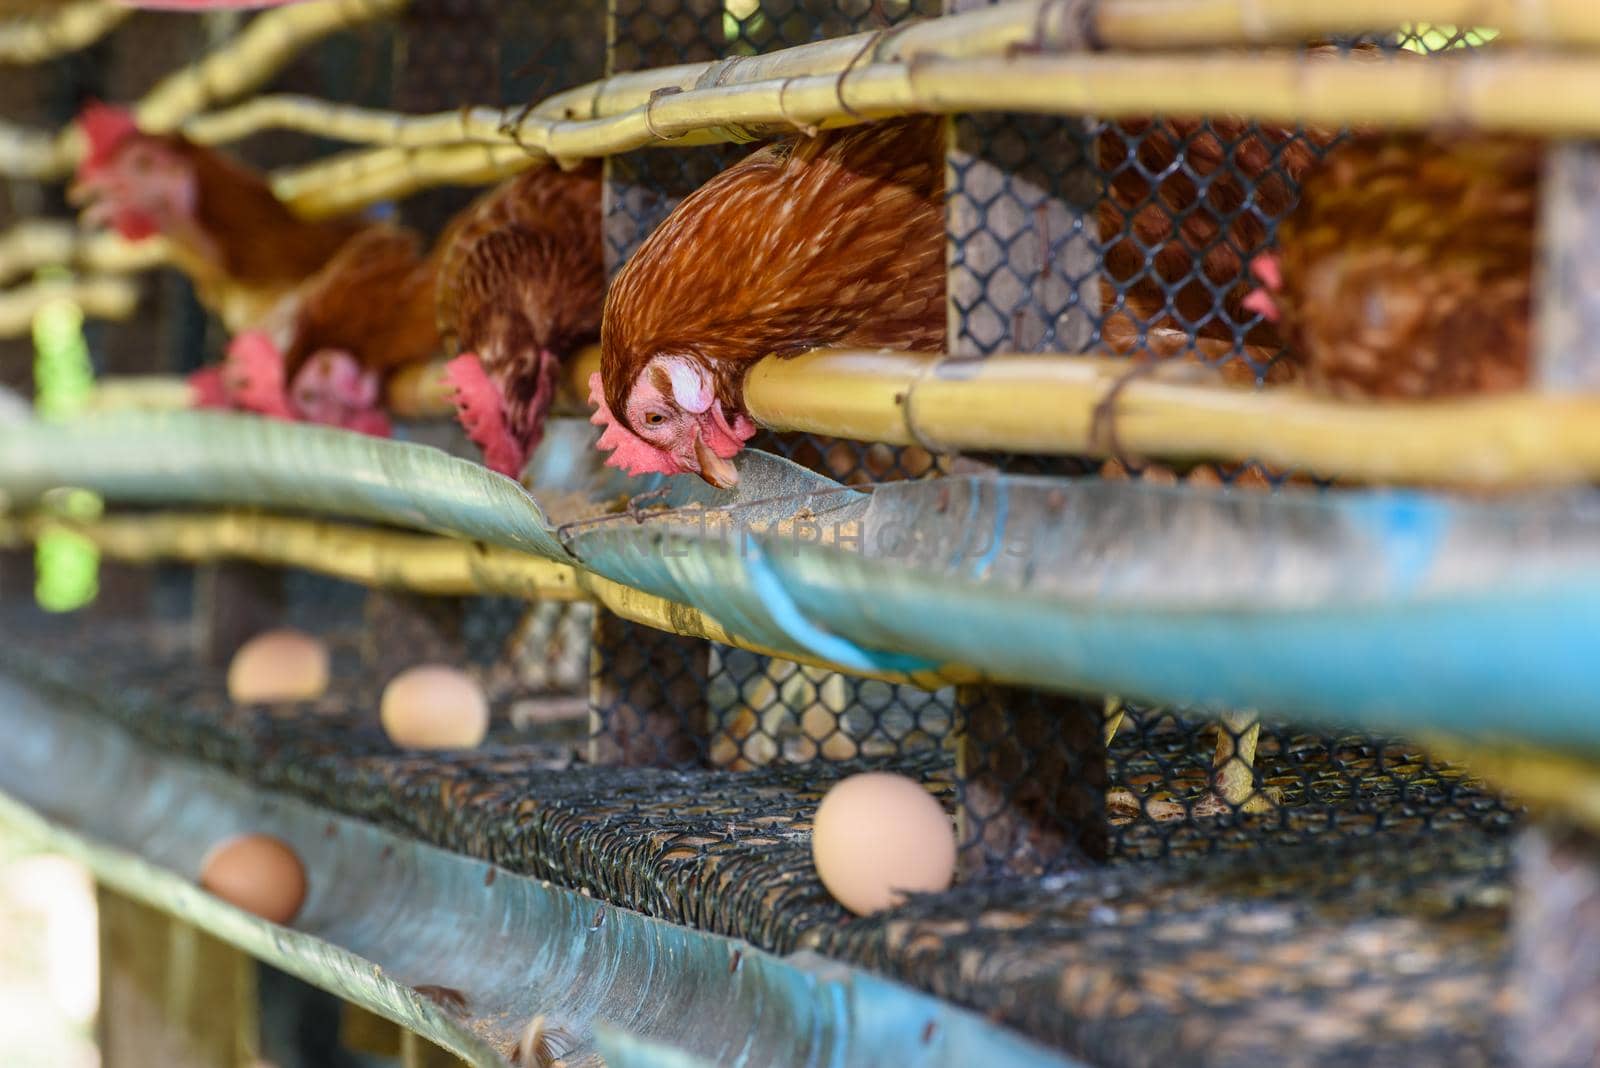 Egg chicken farm in rural Thailand by Yongkiet